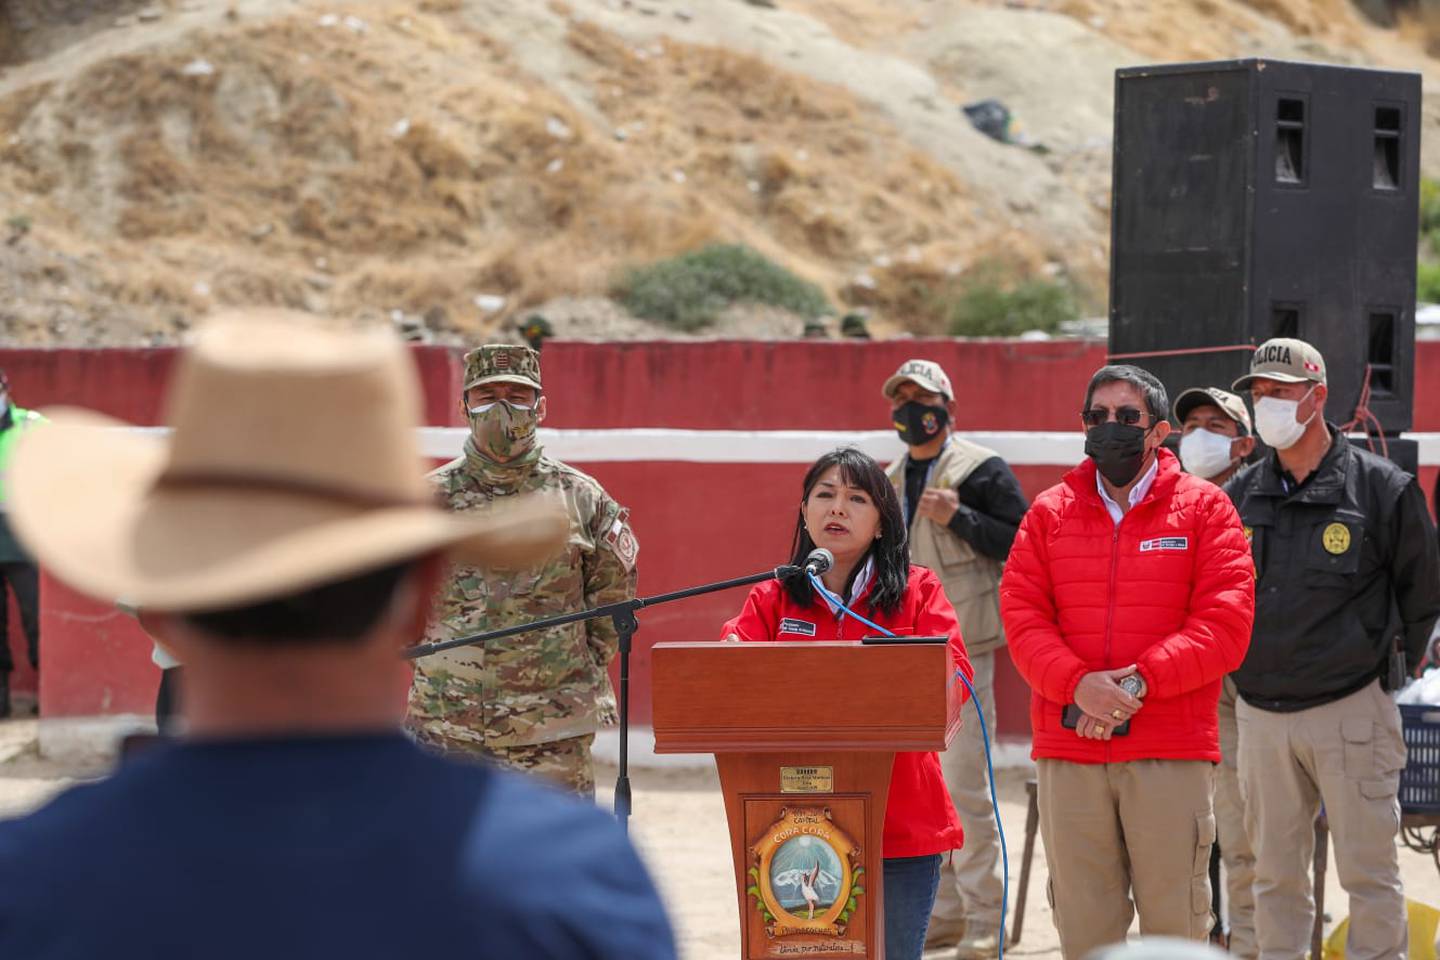 Perú descarta cierre y solicitud de retiro unilateral de operaciones mineras.dfd